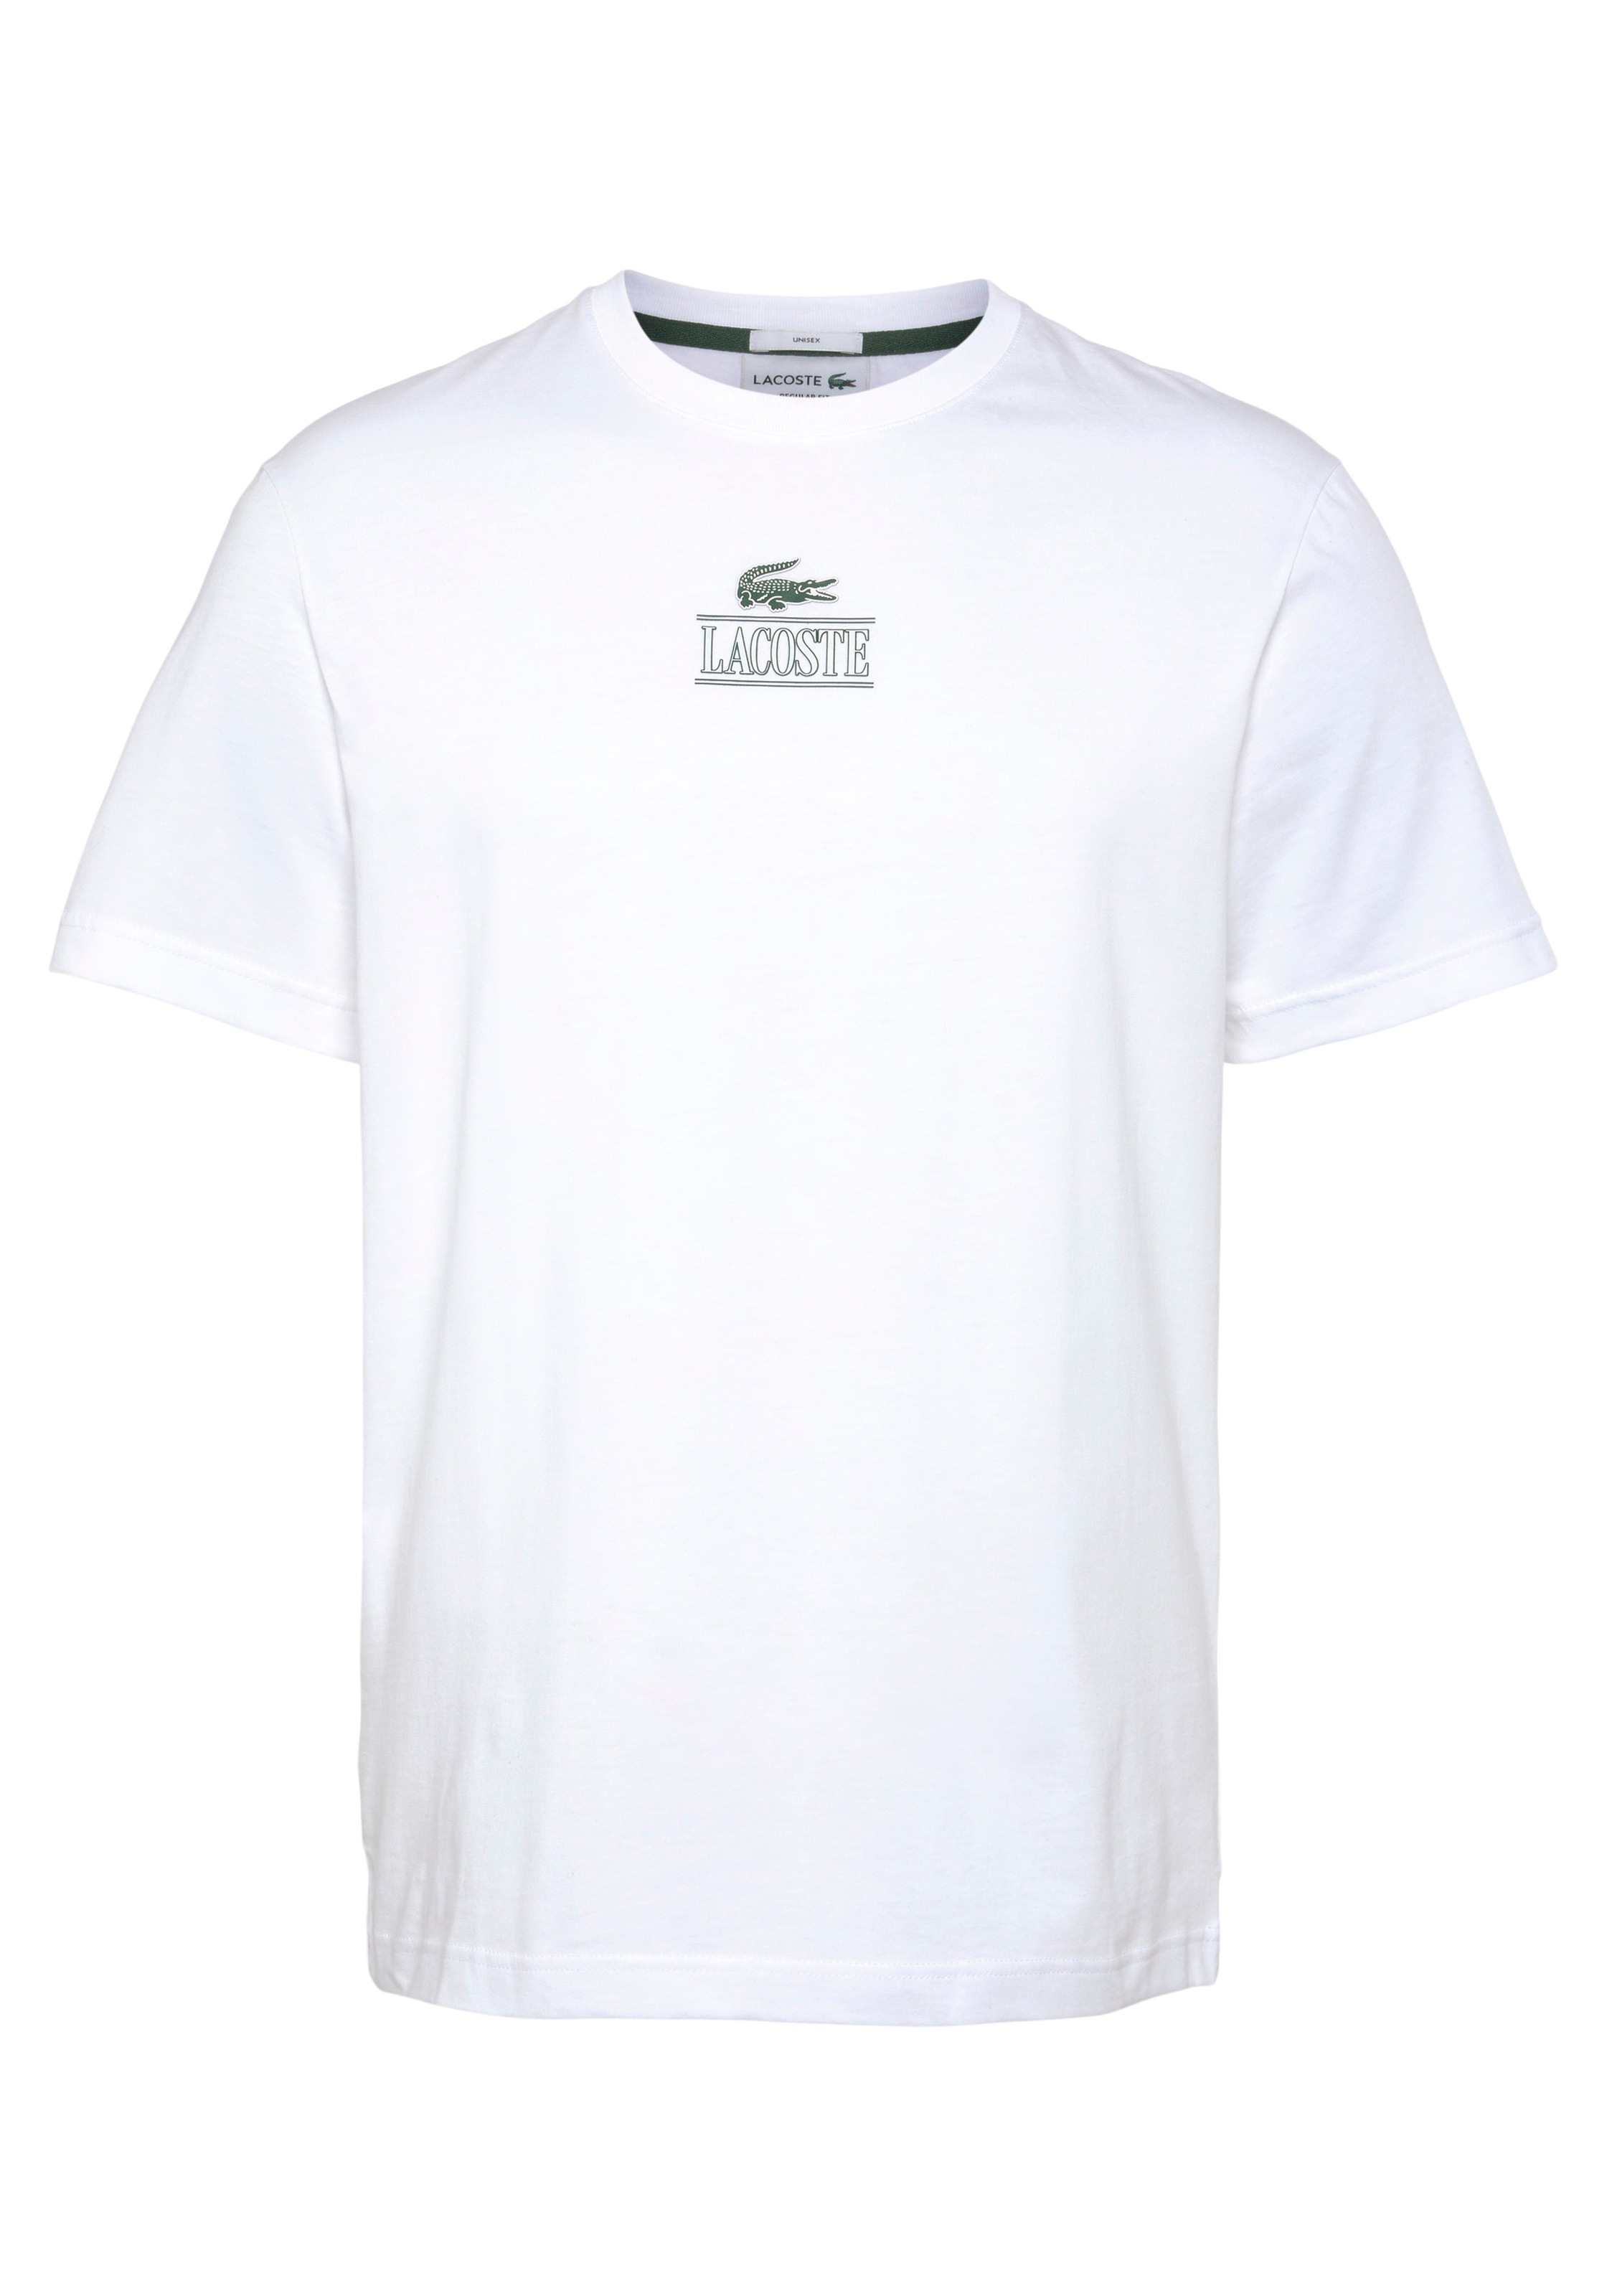 OTTO bei Brust mit bestellen Lacoste auf Print der T-Shirt »T-SHIRT«, Lacoste online